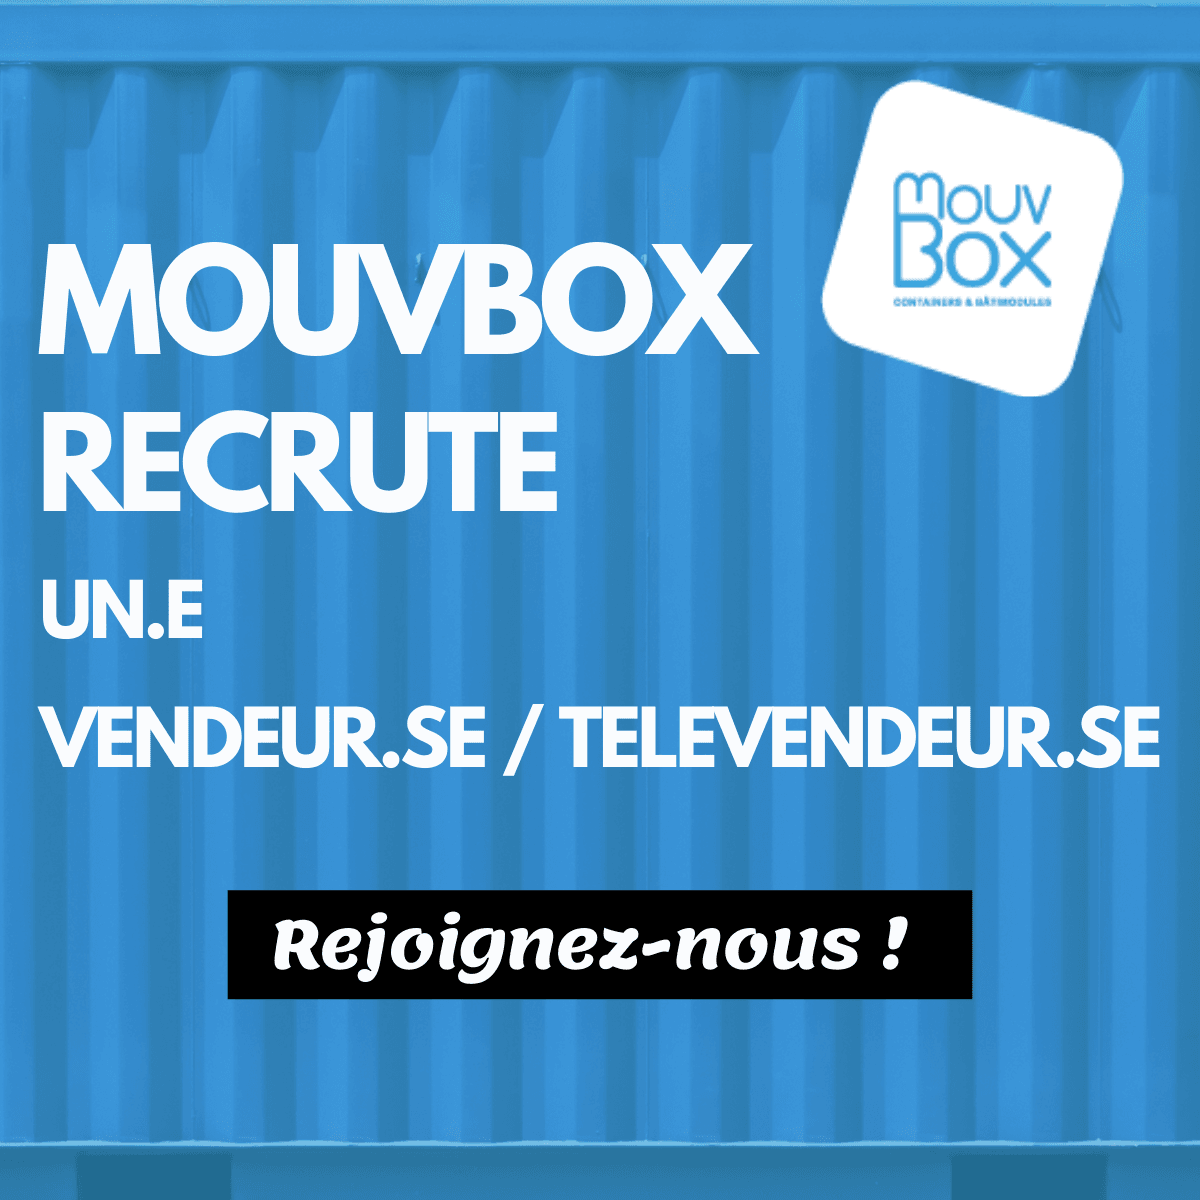 MouvBox recrute un.e vendeur.se / télévendeur.se